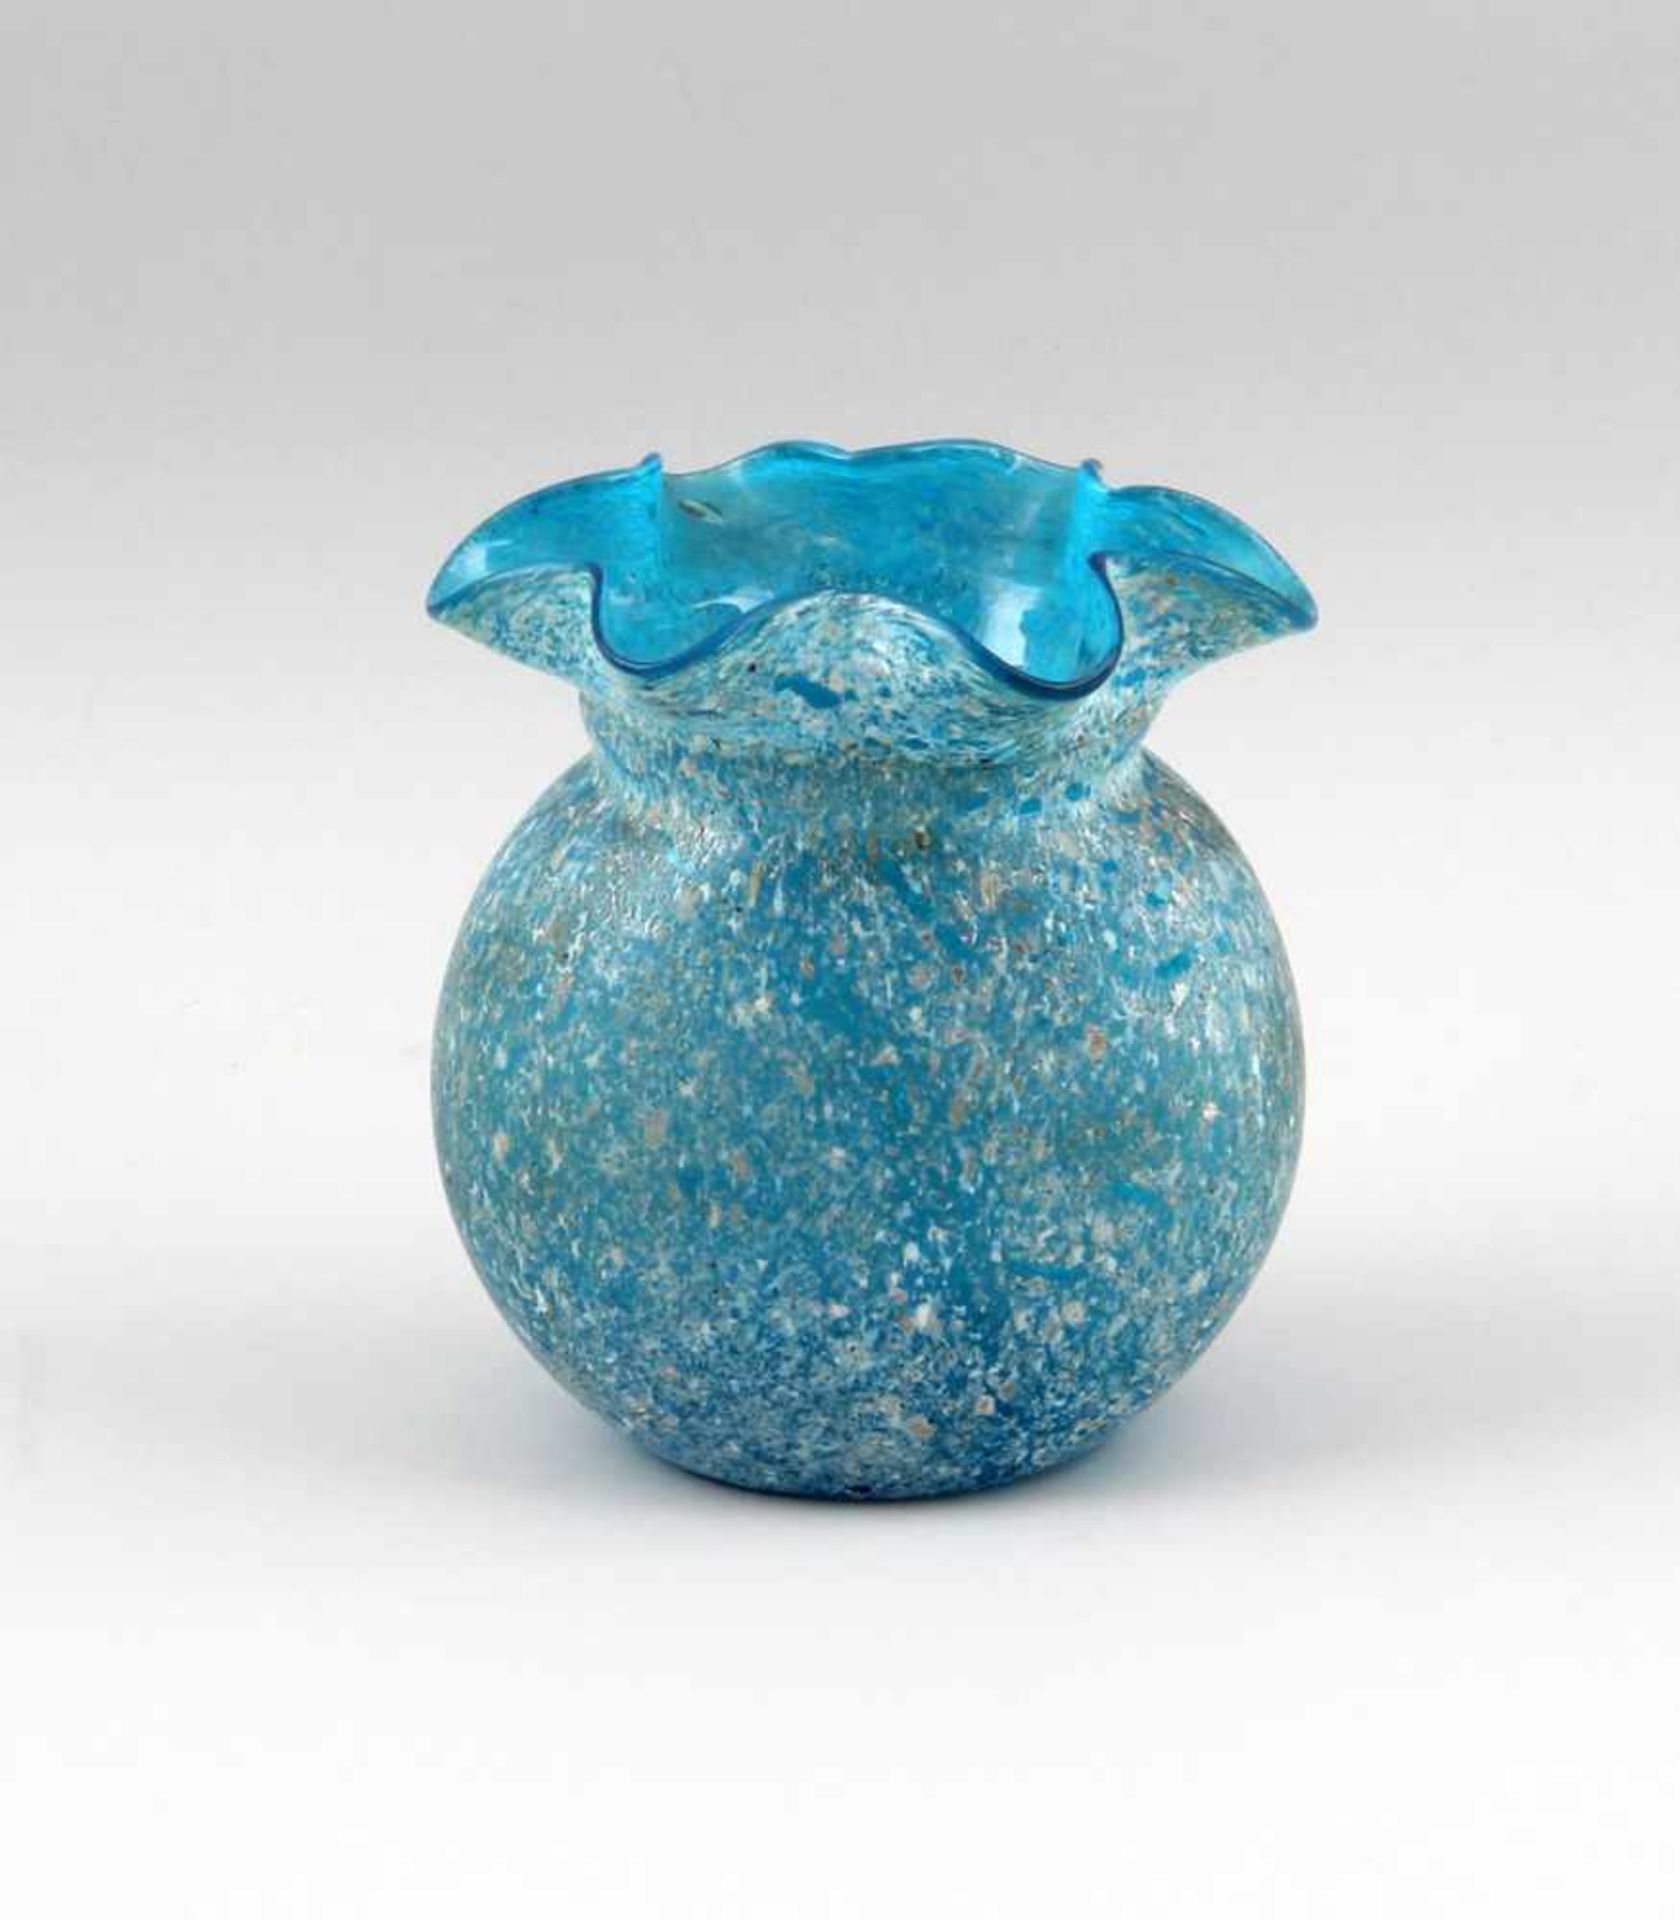 Hellblaue Vase Einschmelzungen.. hellblaues Glas mit weiß-beigen Kröselaufschmelzungen, bauchiger,